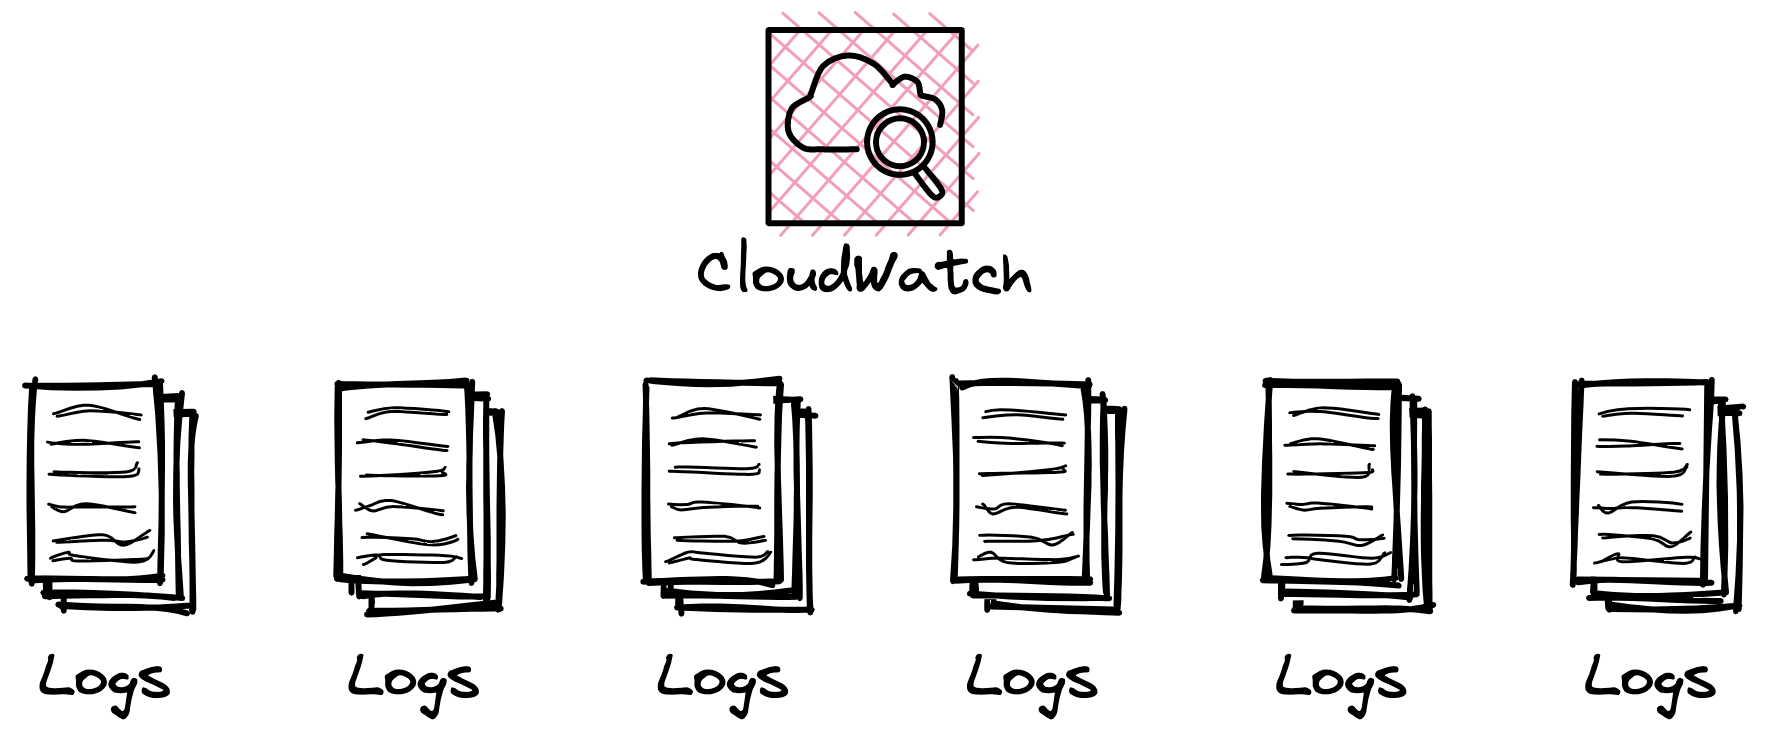 CloudWatch Logs Storage